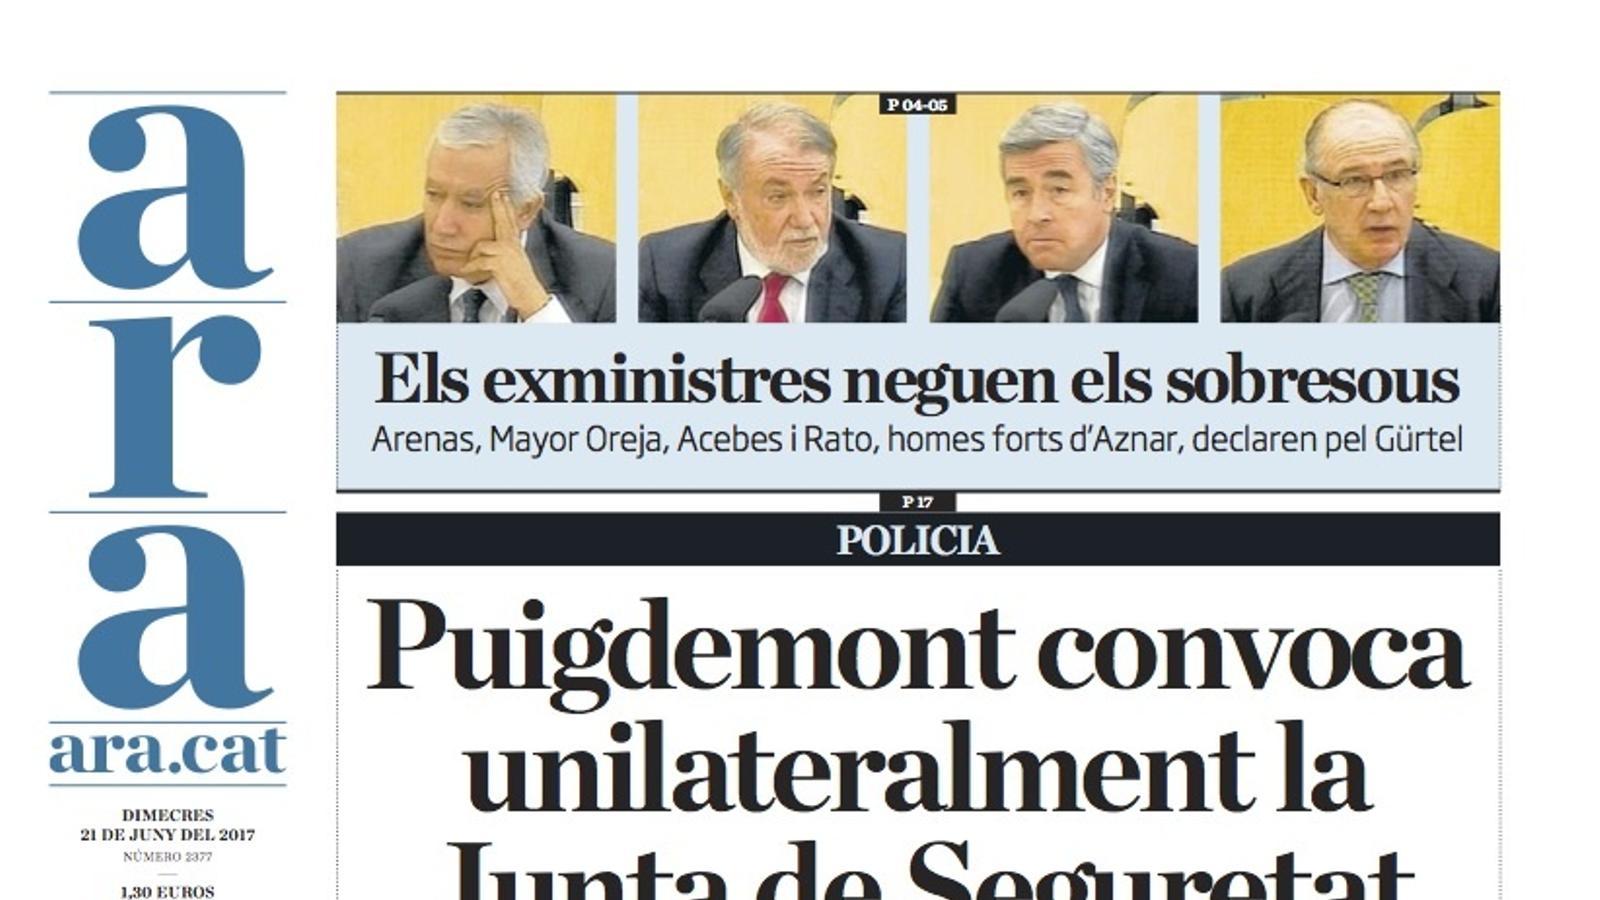 "Puigdemont convoca unilateralment la Junta de Seguretat", portada de l'ARA